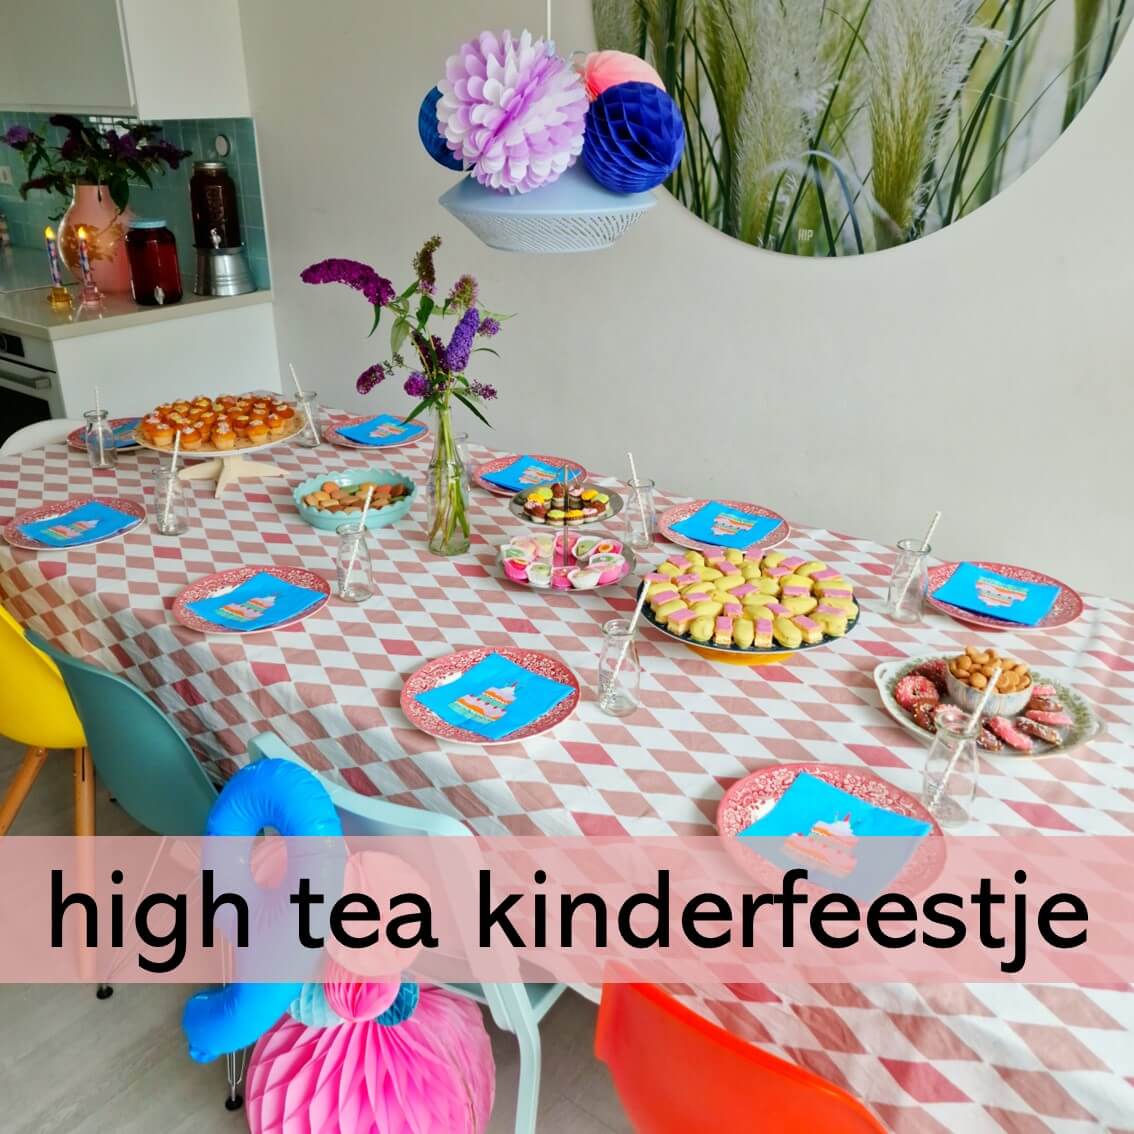 High tea kinderfeestje: leuke tips en ideeën. Op zoek naar leuke tips en ideeën voor een high tea kinderfeestje? We organiseerden een high tea feestje voor onze dochter en delen onze tips en tricks!